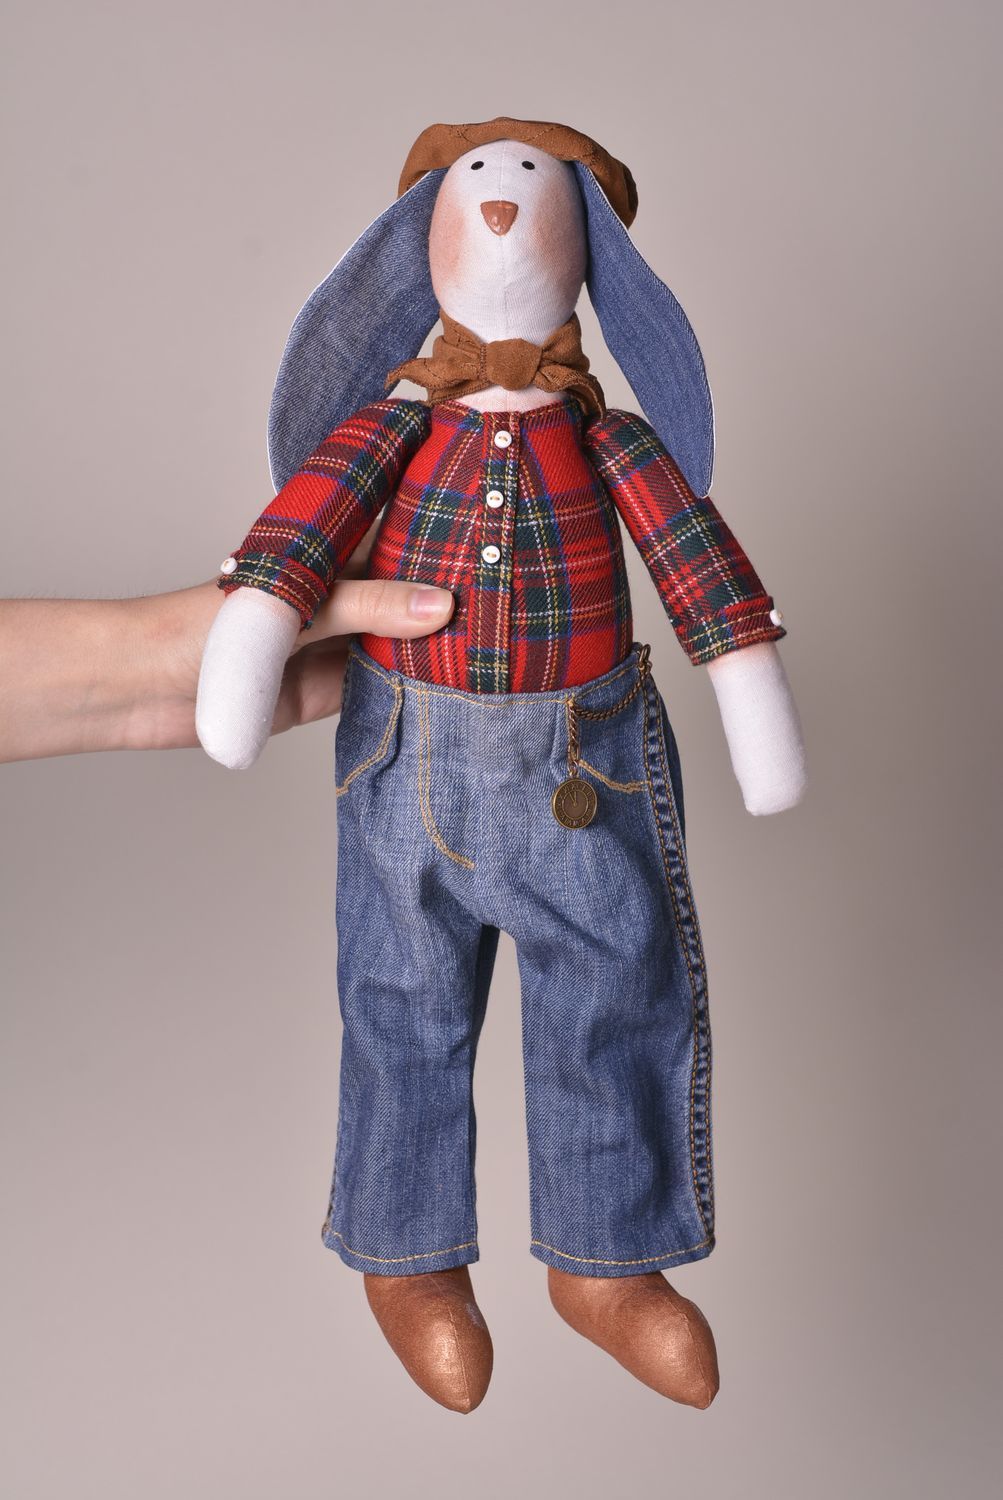 Игрушка заяц ручной работы авторская игрушка для дома и детей стильный подарок фото 3